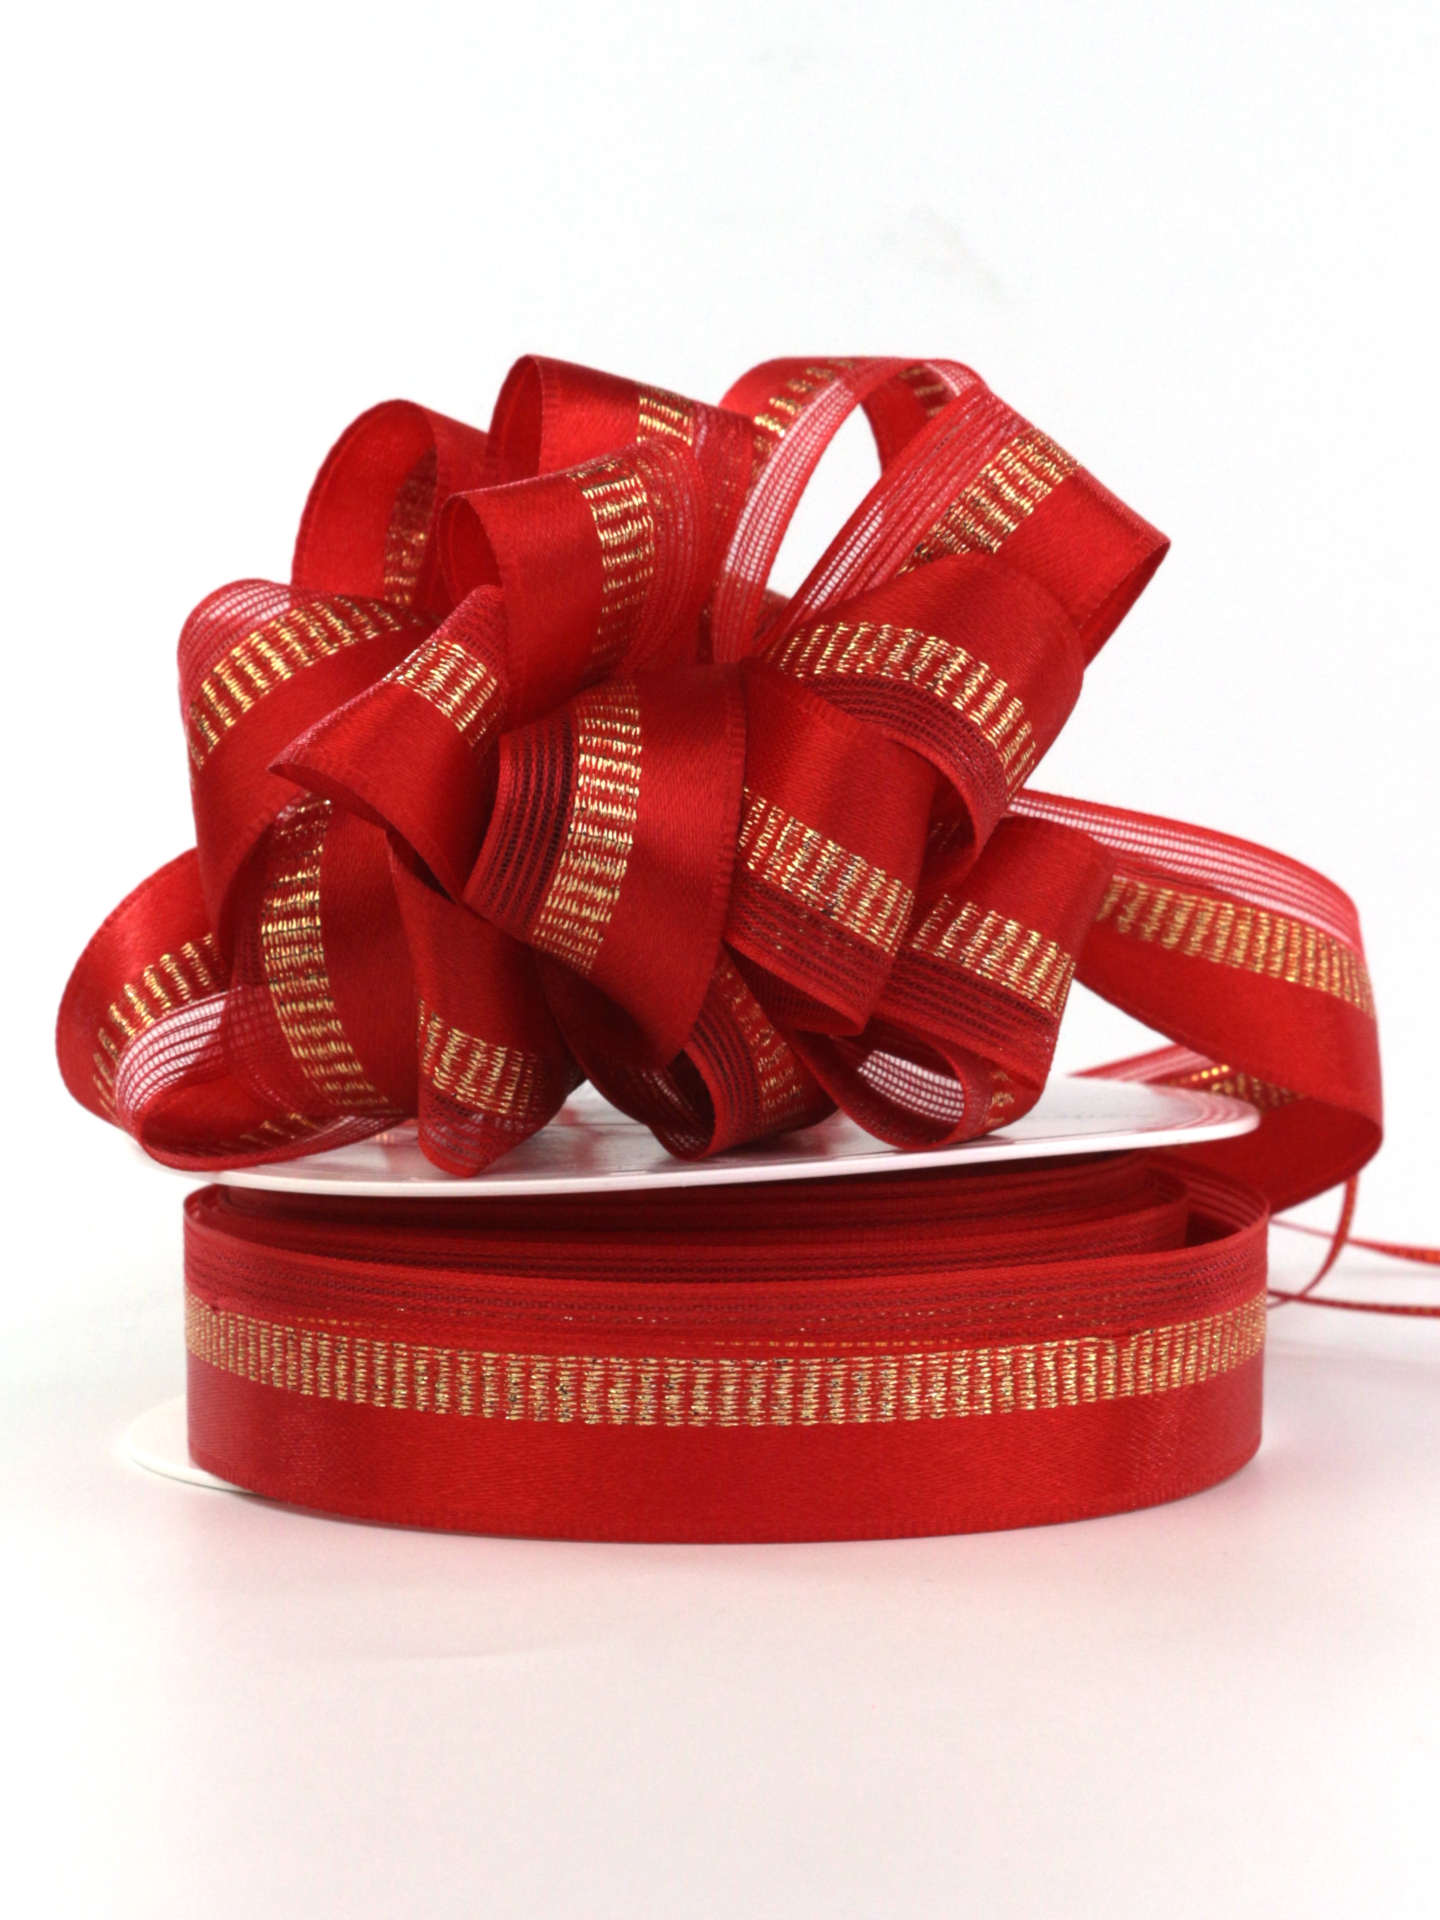 Weihnachtsziehschleifenband Susifix, rot, 25 mm breit, 25 m Rolle - geschenkband-weihnachten-einfarbig, ziehschleifen, geschenkband-weihnachten-dauersortiment, weihnachtsbaender, geschenkband-weihnachten